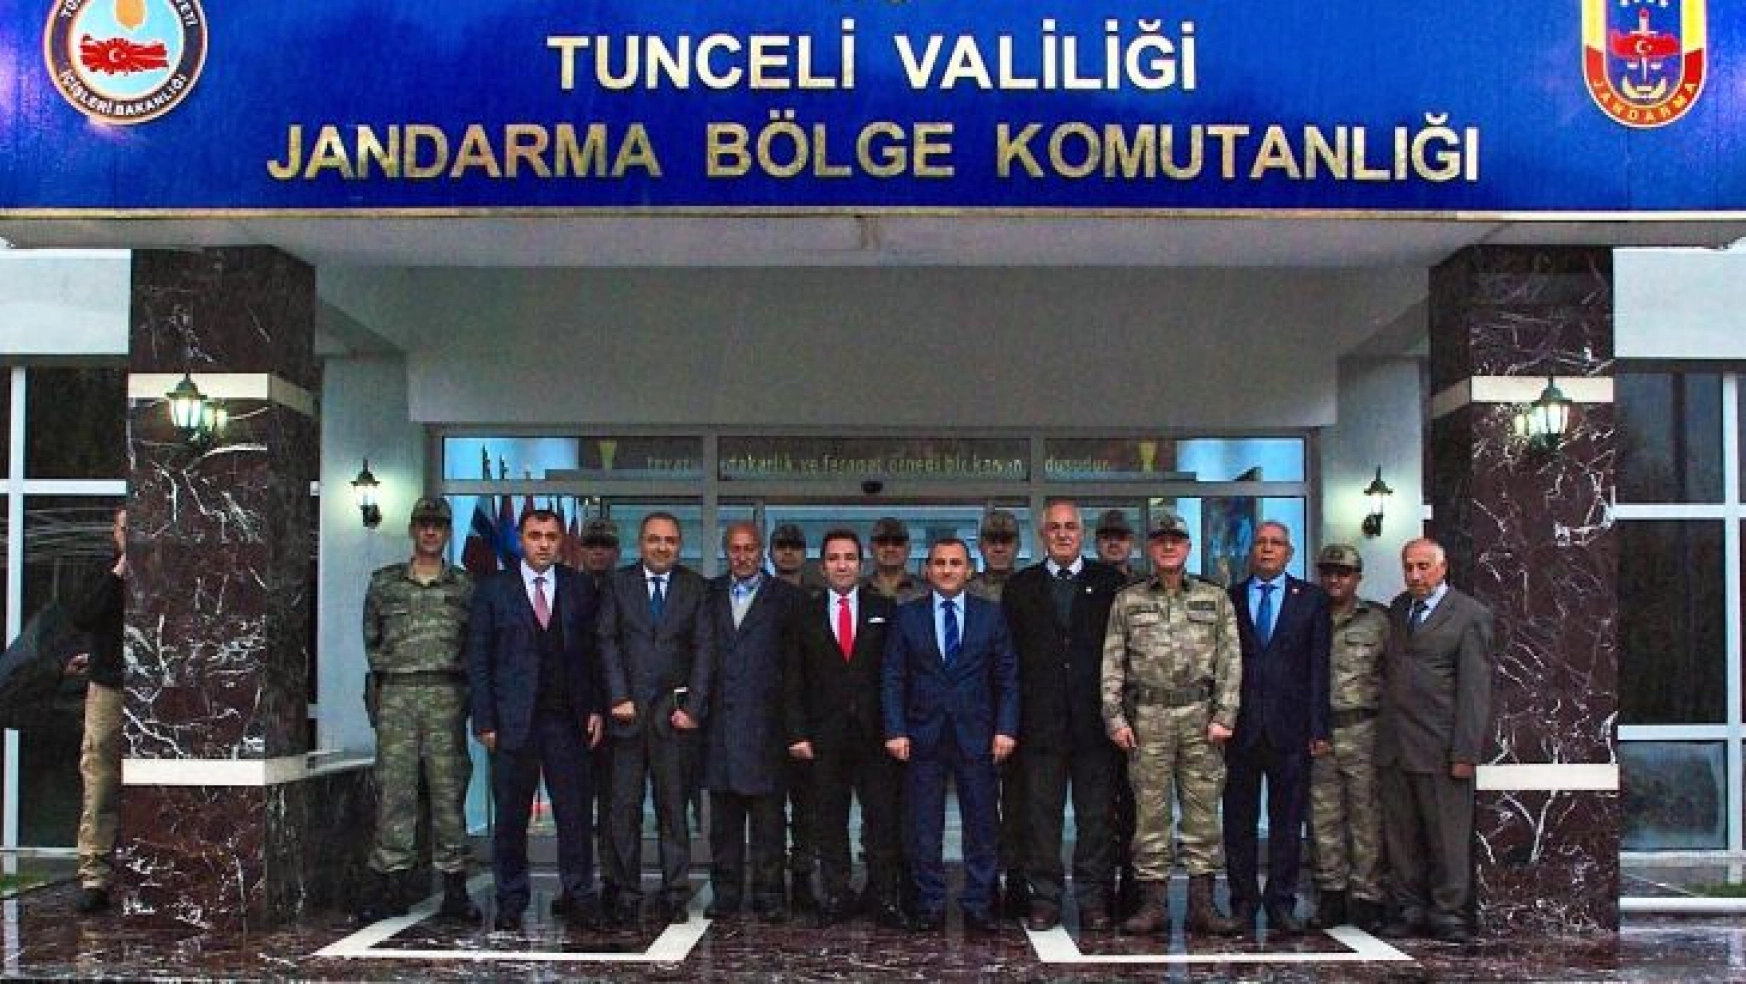 Tunceli Jandarma Bölge Komutanlığı Ziyaret